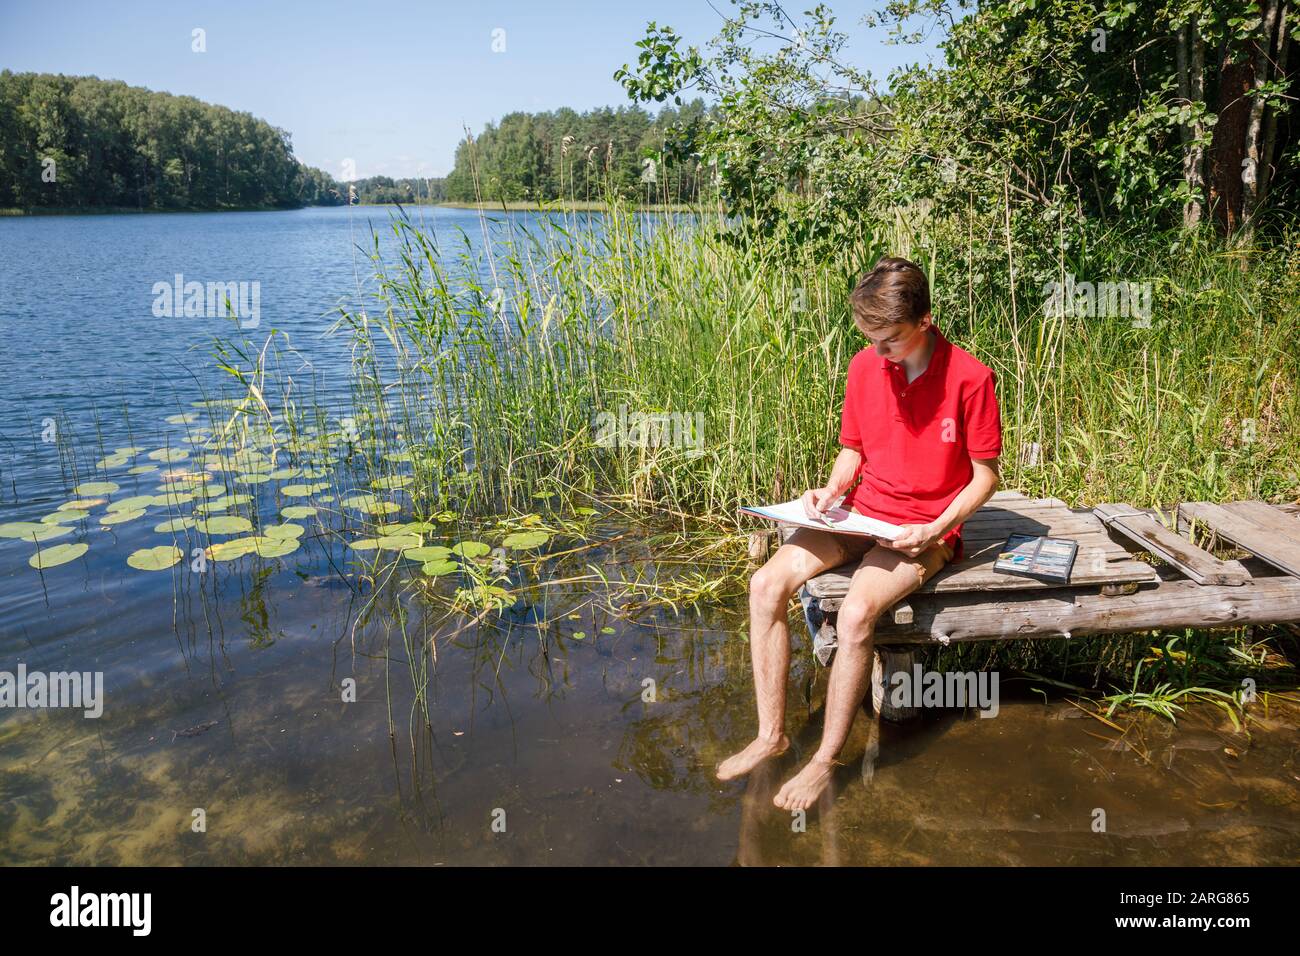 Jeune garçon assis sur une jetée en bois au bord d'un lac forestier avec des crayons pastel - plein air concept de scotching Banque D'Images